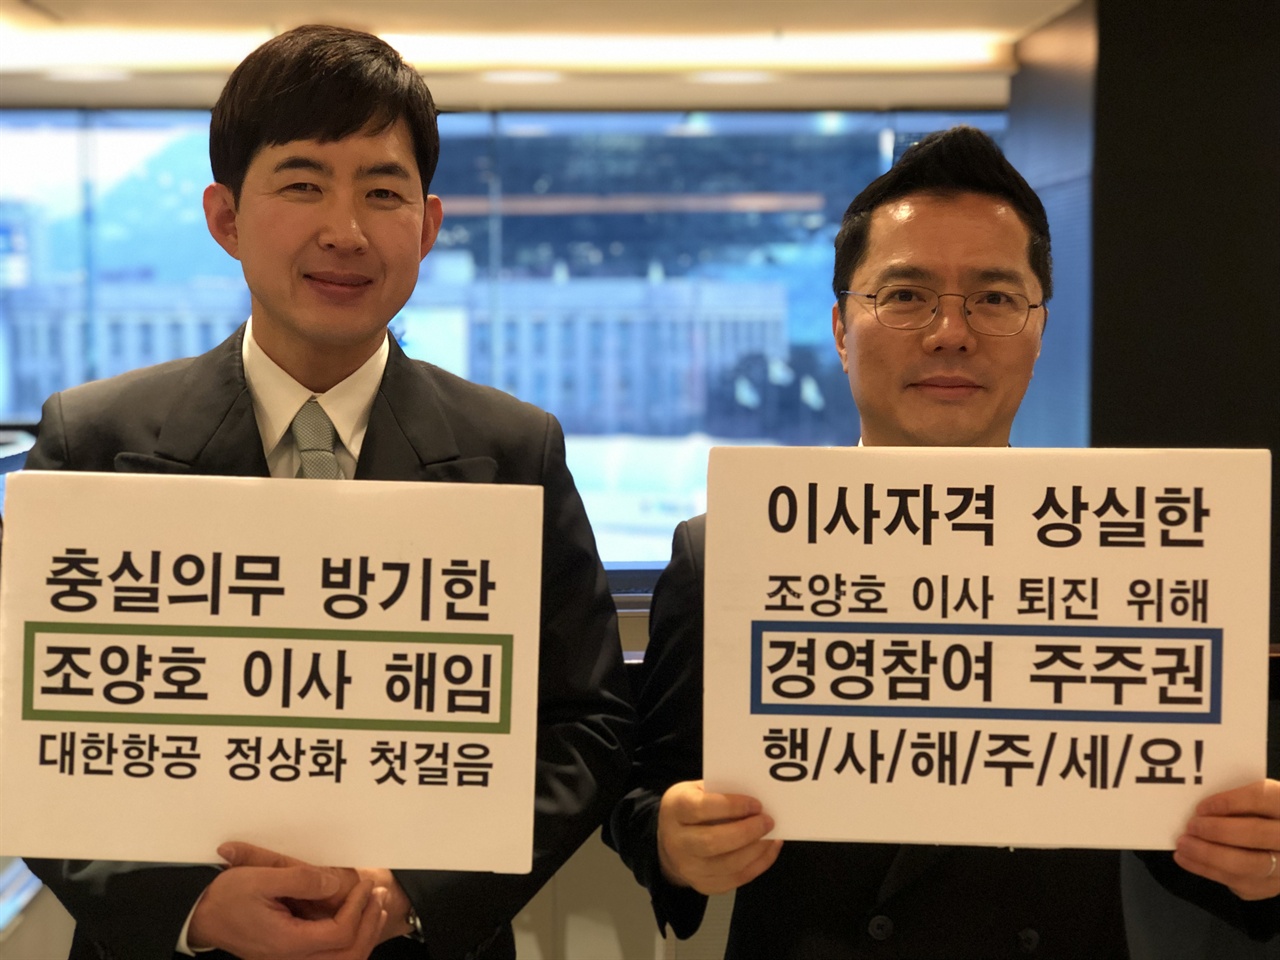 2019. 1. 16. 대한항공 직원연대지부 박창진 지부장과 이춘목 홍보부장이 국민연금의 대한항공 주주권 행사를 촉구하는 피켓을 들고 있다.